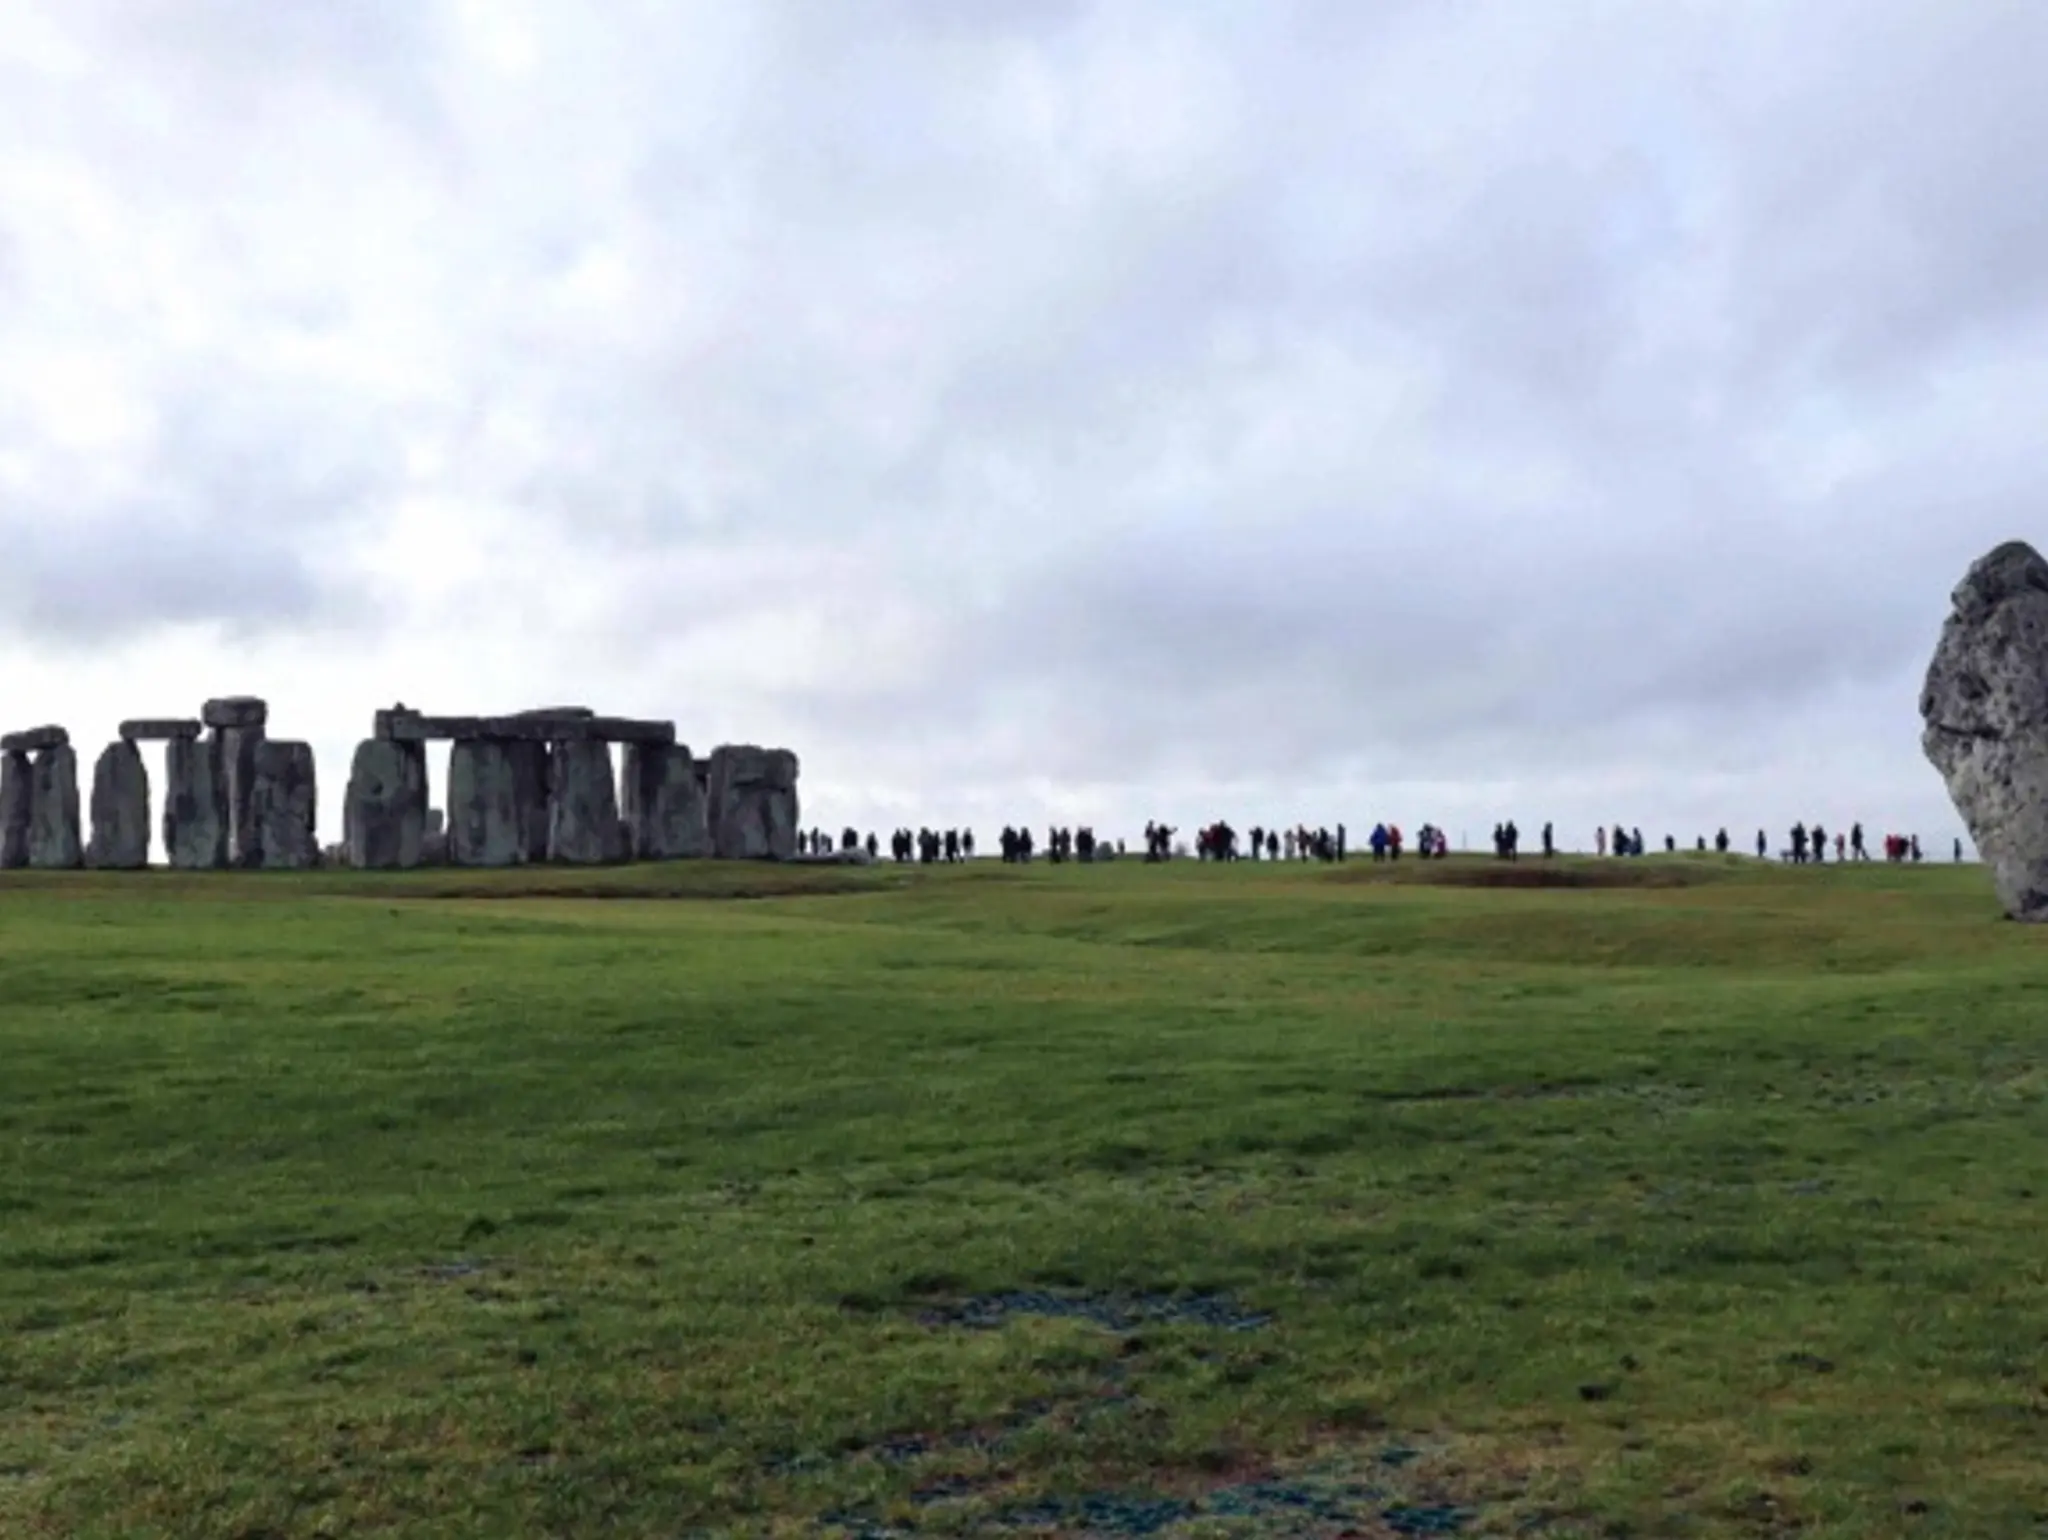 458 Stonehenge ในวันฟ้าทึมปริศนาแท่งหินตั้งกับหนังสือสามเล่ม